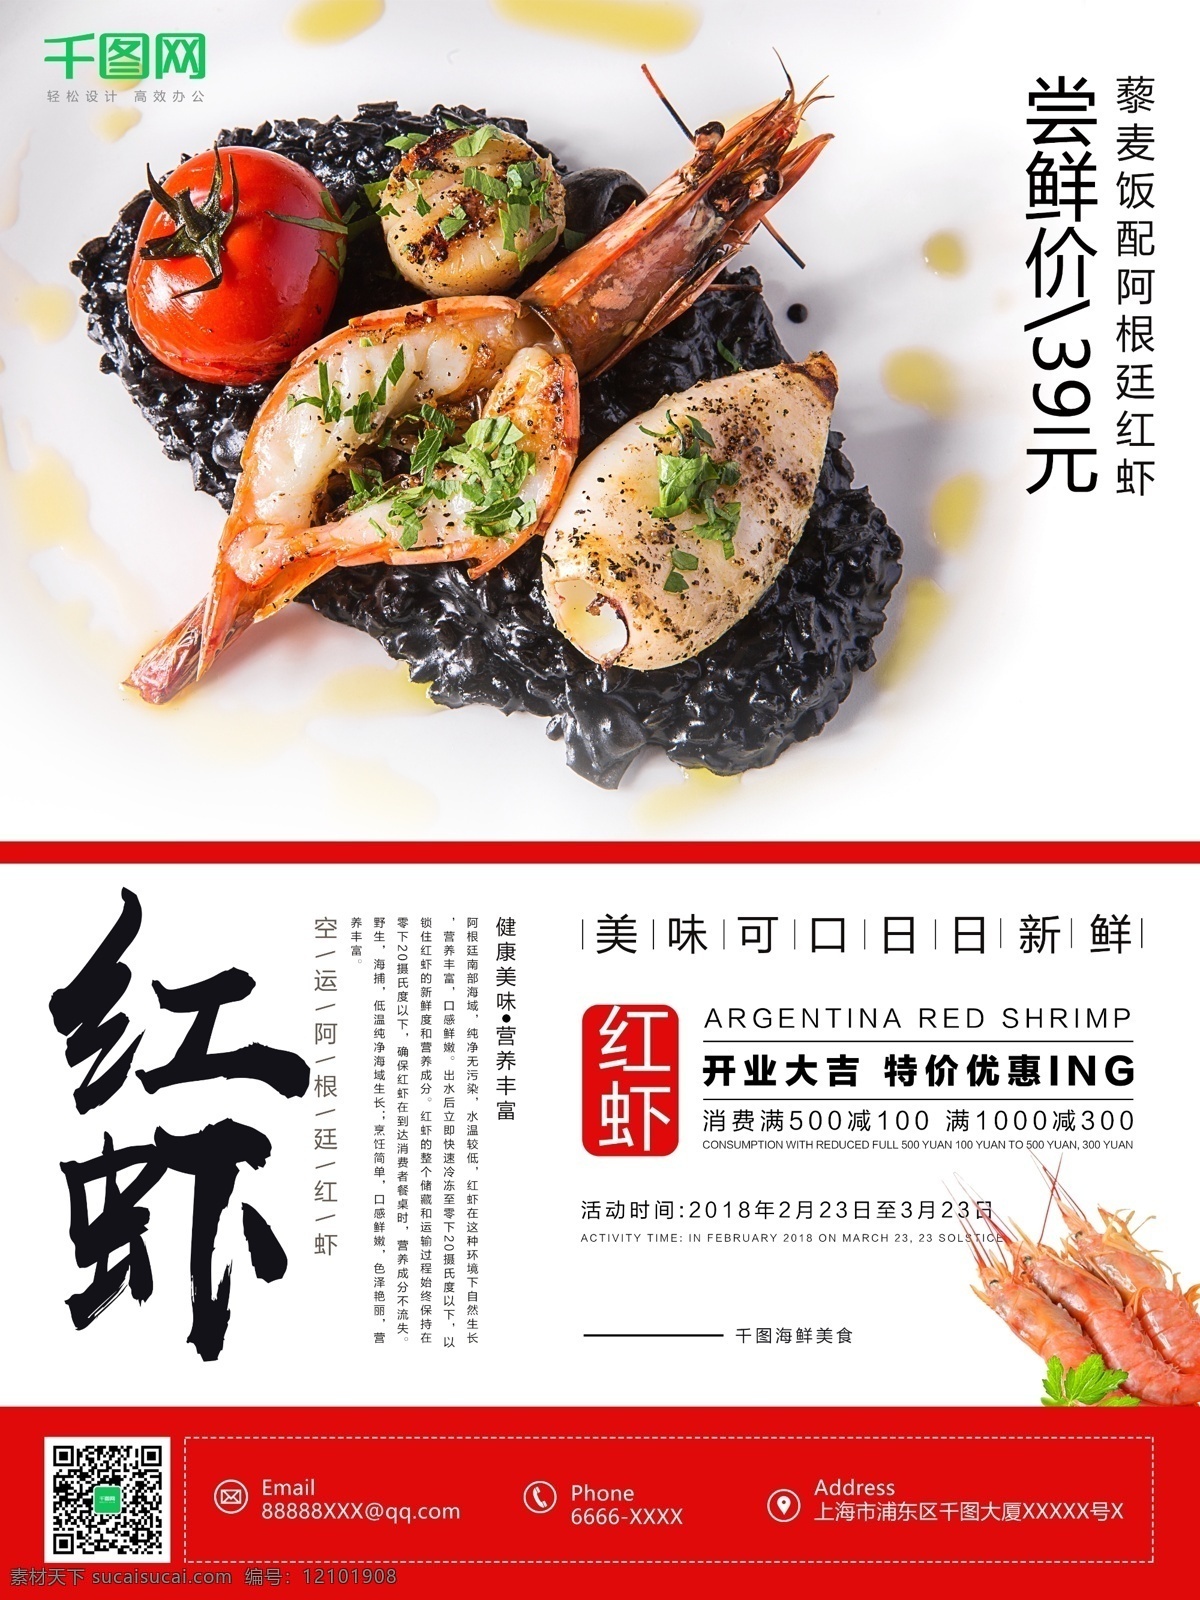 简约 中国 风 阿根廷 红 虾 美食 海报 中国风 红虾 海鲜 促销 阿根廷美食 阿根廷红虾